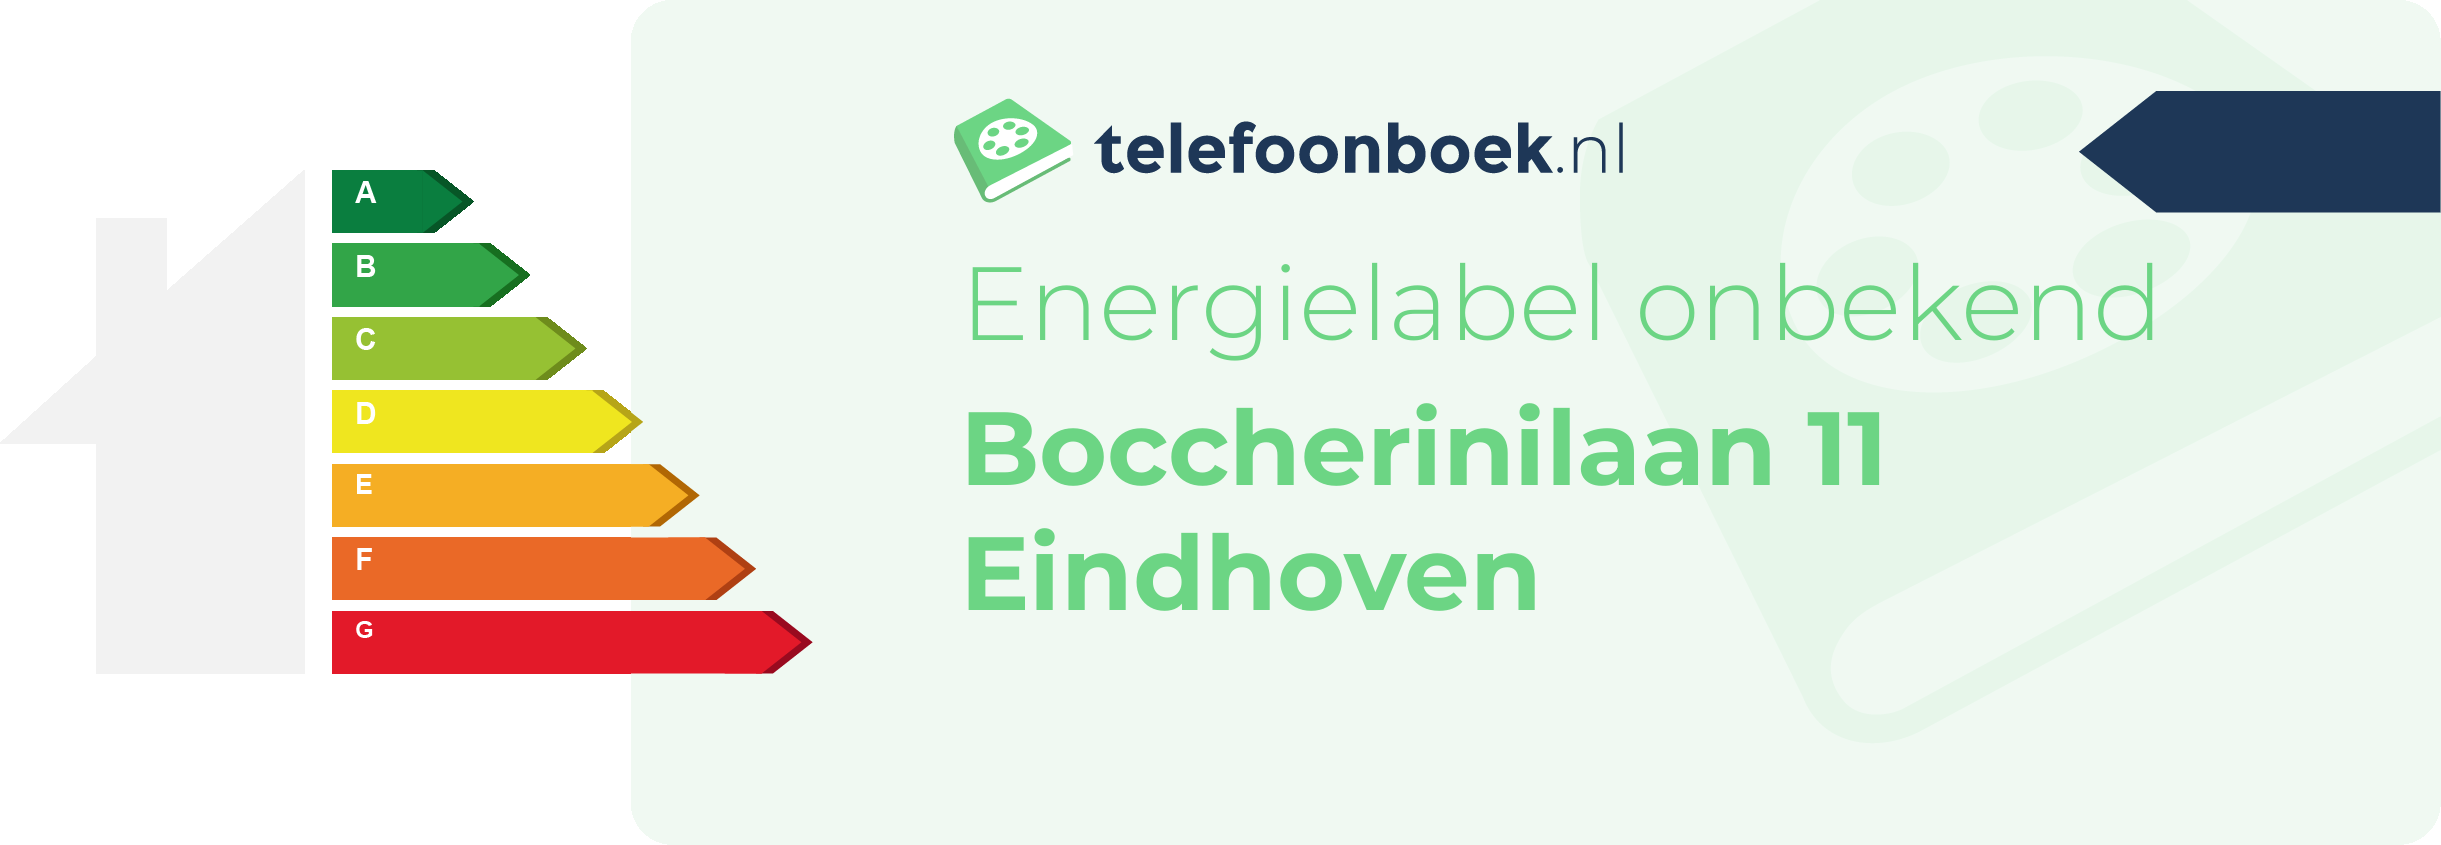 Energielabel Boccherinilaan 11 Eindhoven